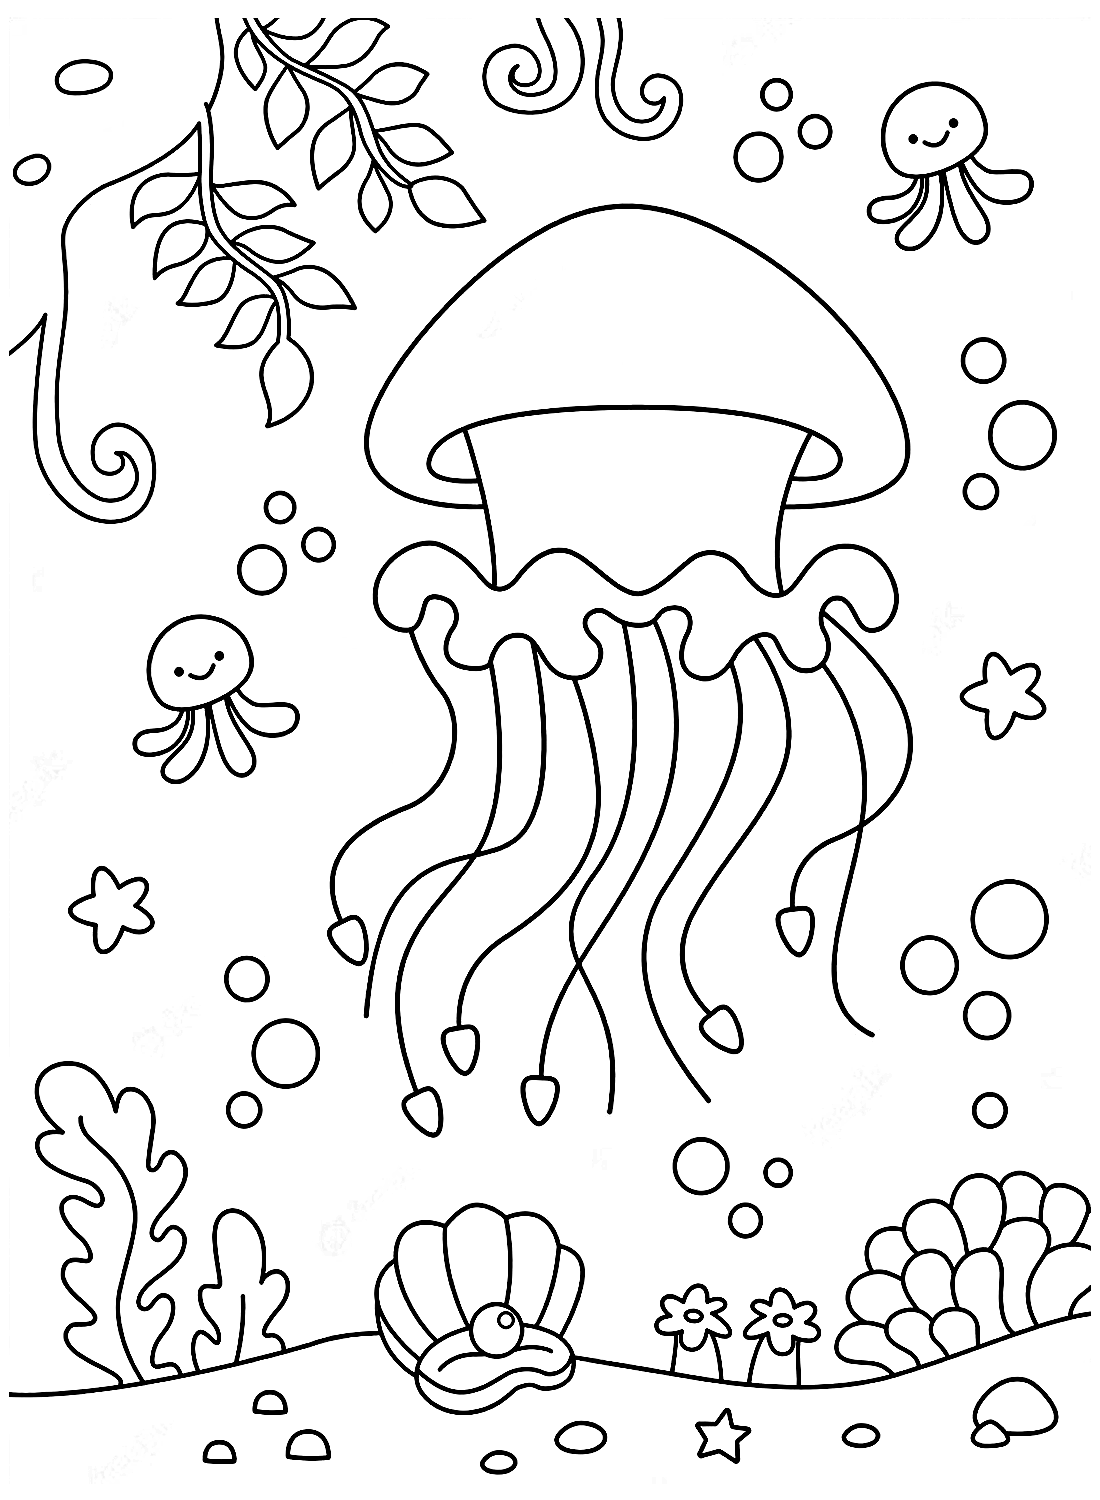 El océano y las medusas de Jellyfish